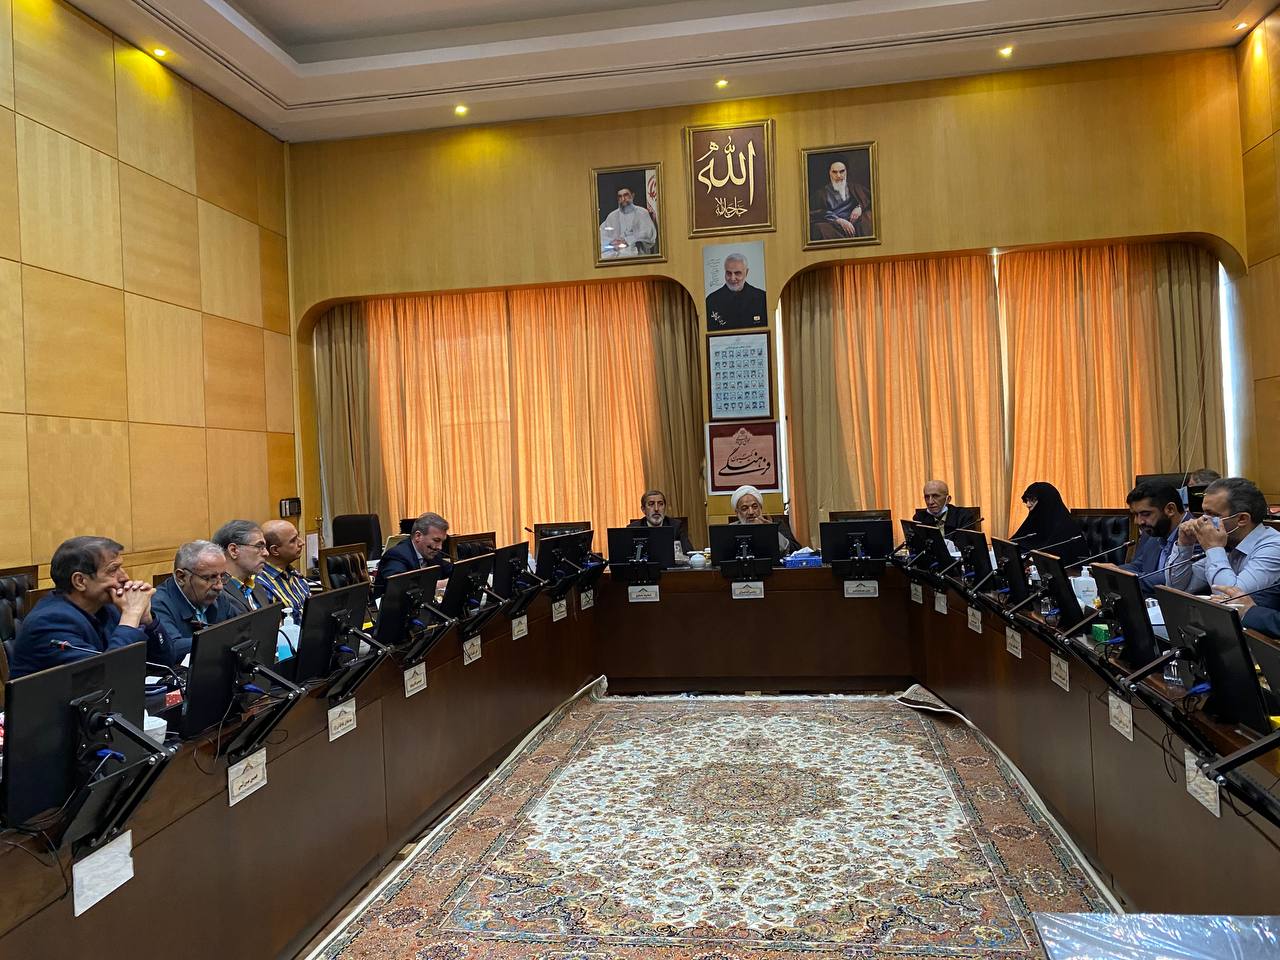 حضور جمعی از شاعران در جلسه کمیسیون فرهنگی مجلس